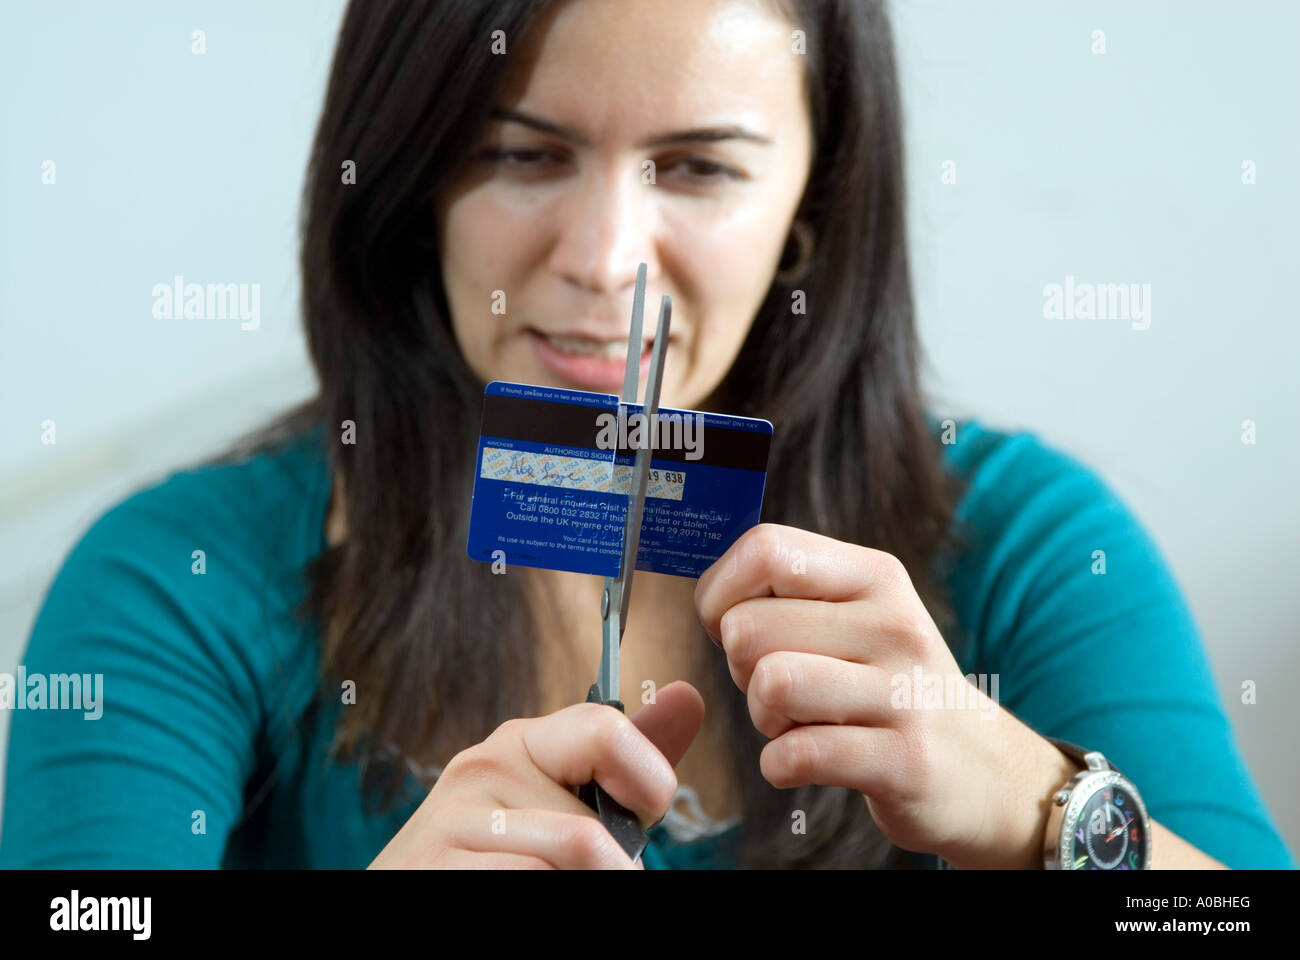 Junge Frau Kreditkarte zerschneiden, mit Schere, England UK Stockfoto